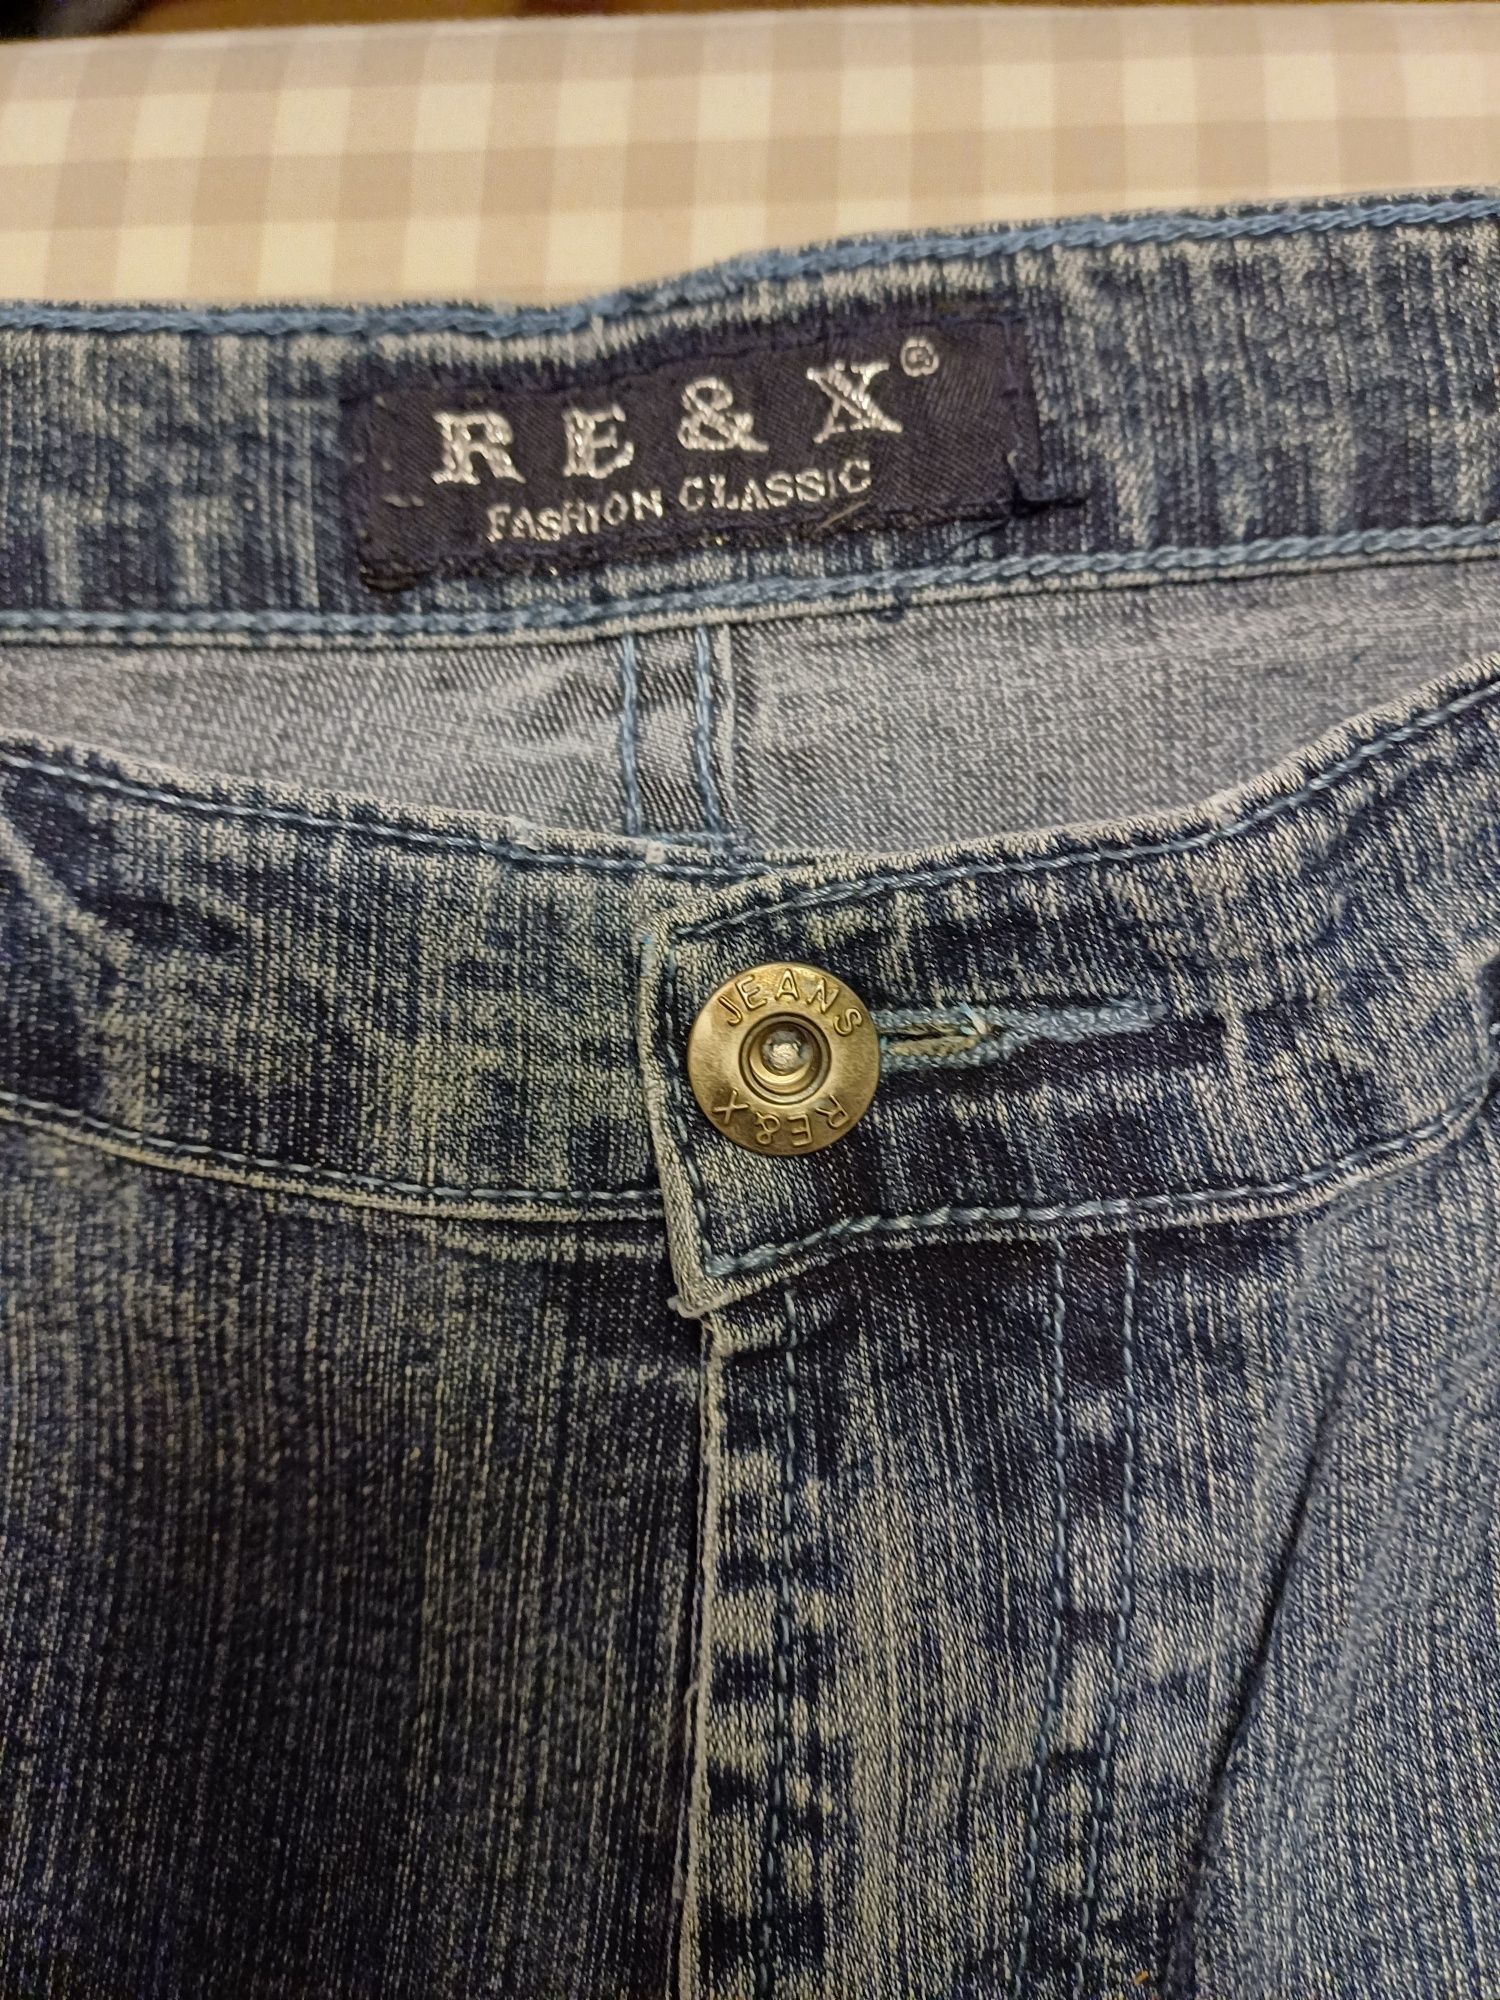 Spodnie męskie jeans dżinsowe Re&X L klasyczne